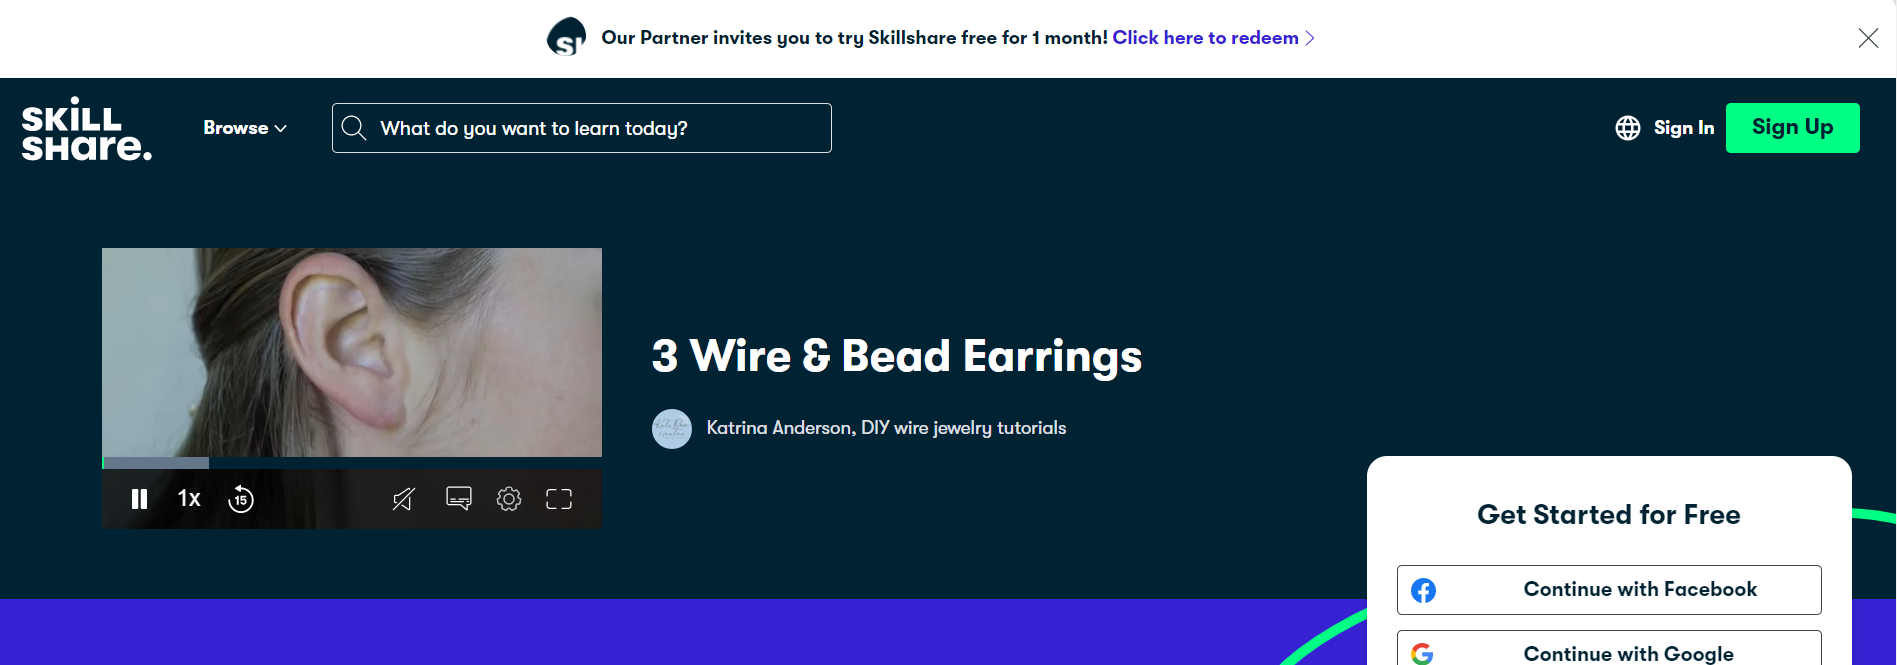 3 Wire & Bead Earrings